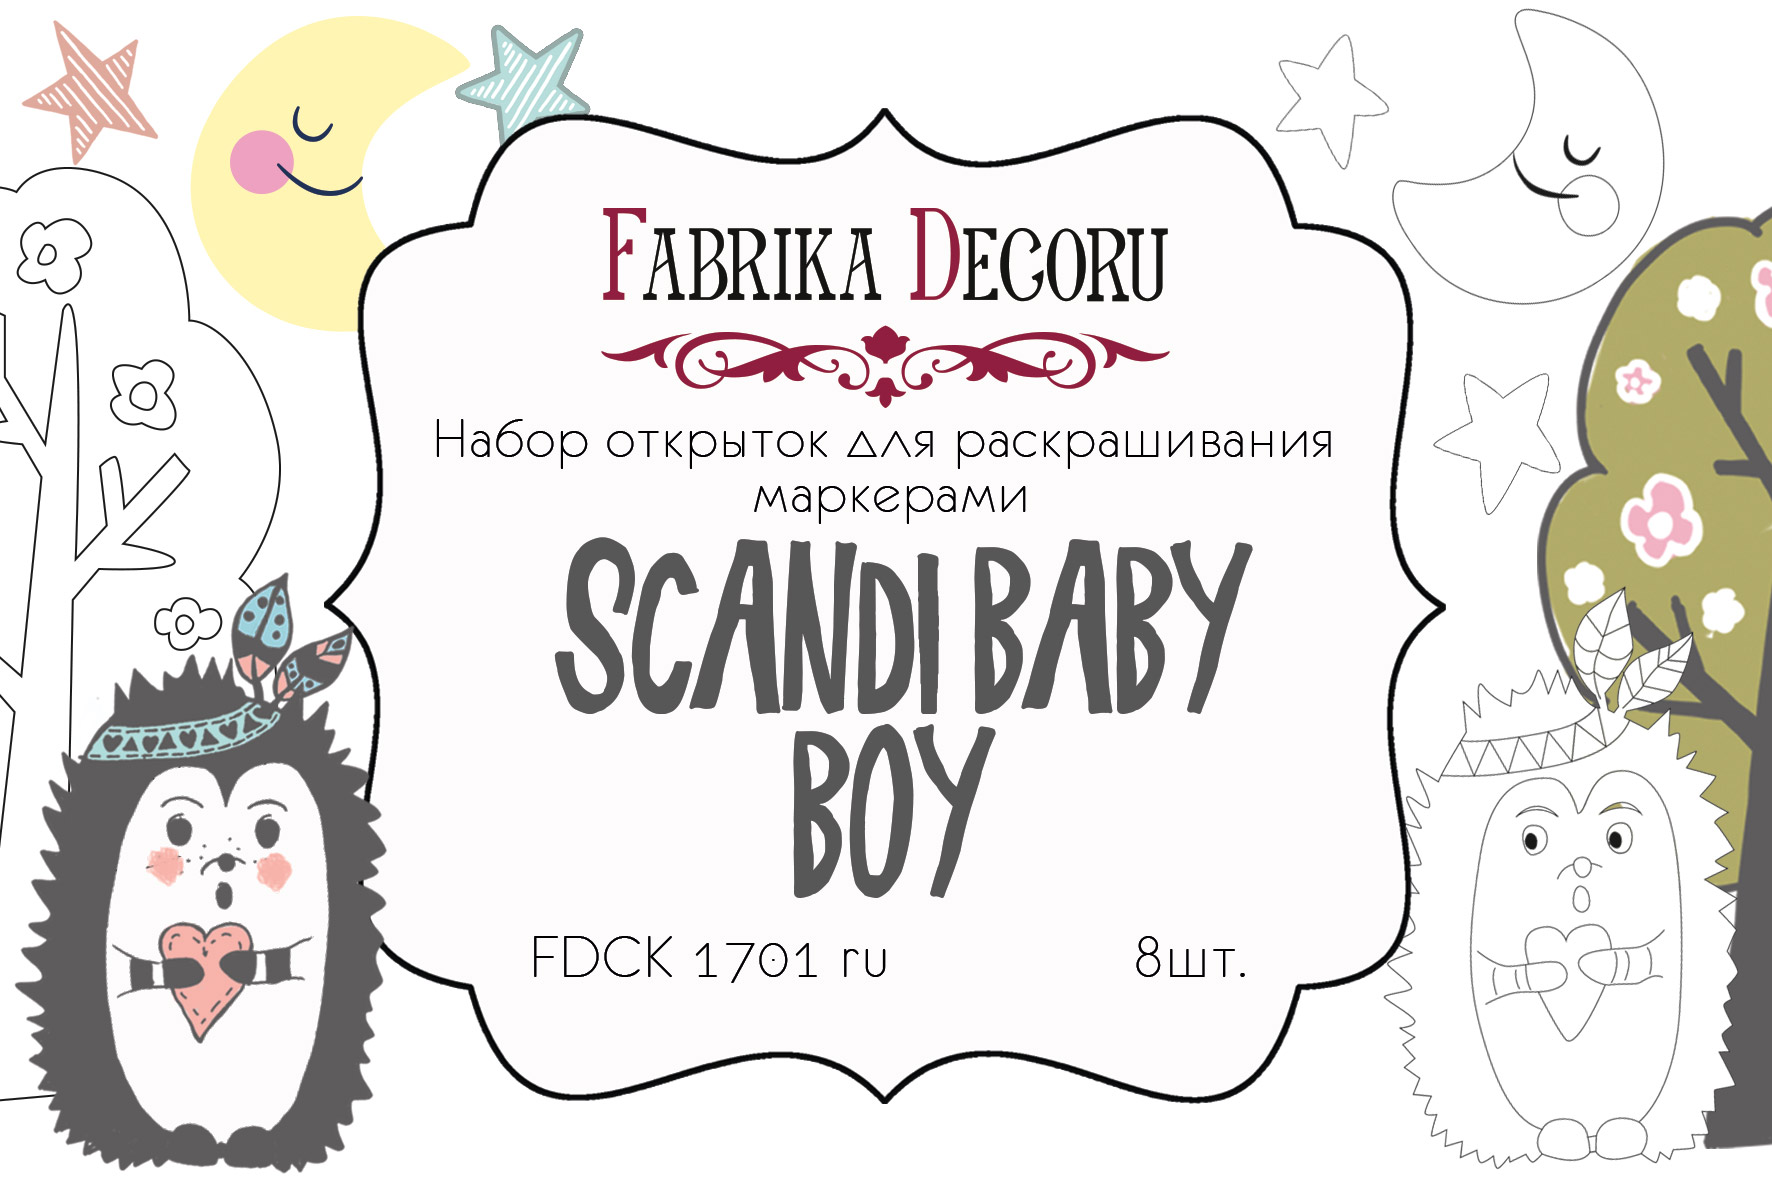 Zestaw pocztówe "Scandi Baby Boy" do kolorowania markerami RU - Fabrika Decoru